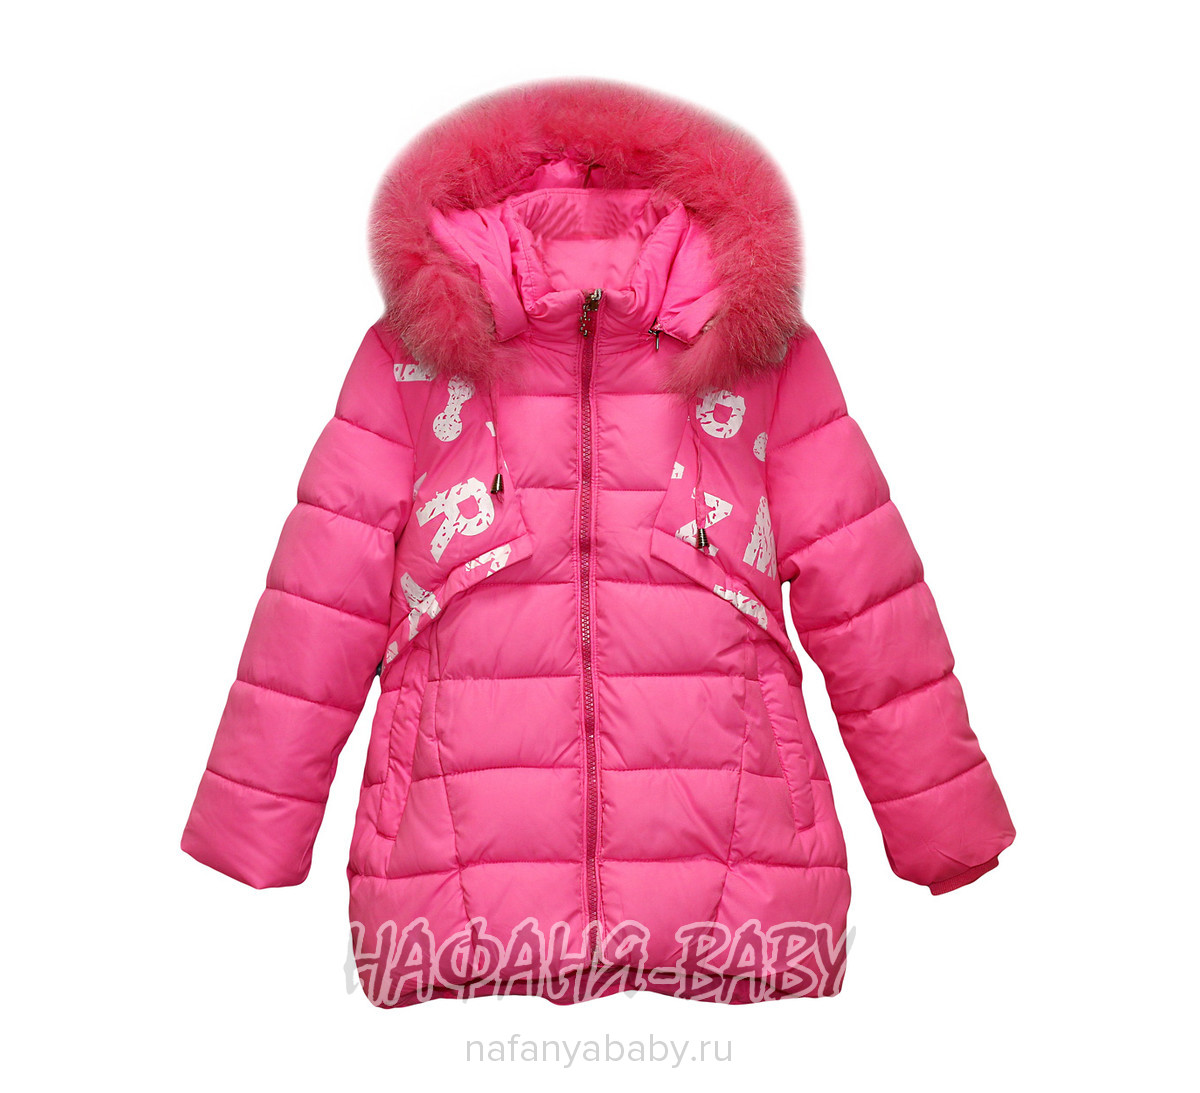 Детская зимняя куртка YIXIANG, купить в интернет магазине Нафаня. арт: 566.